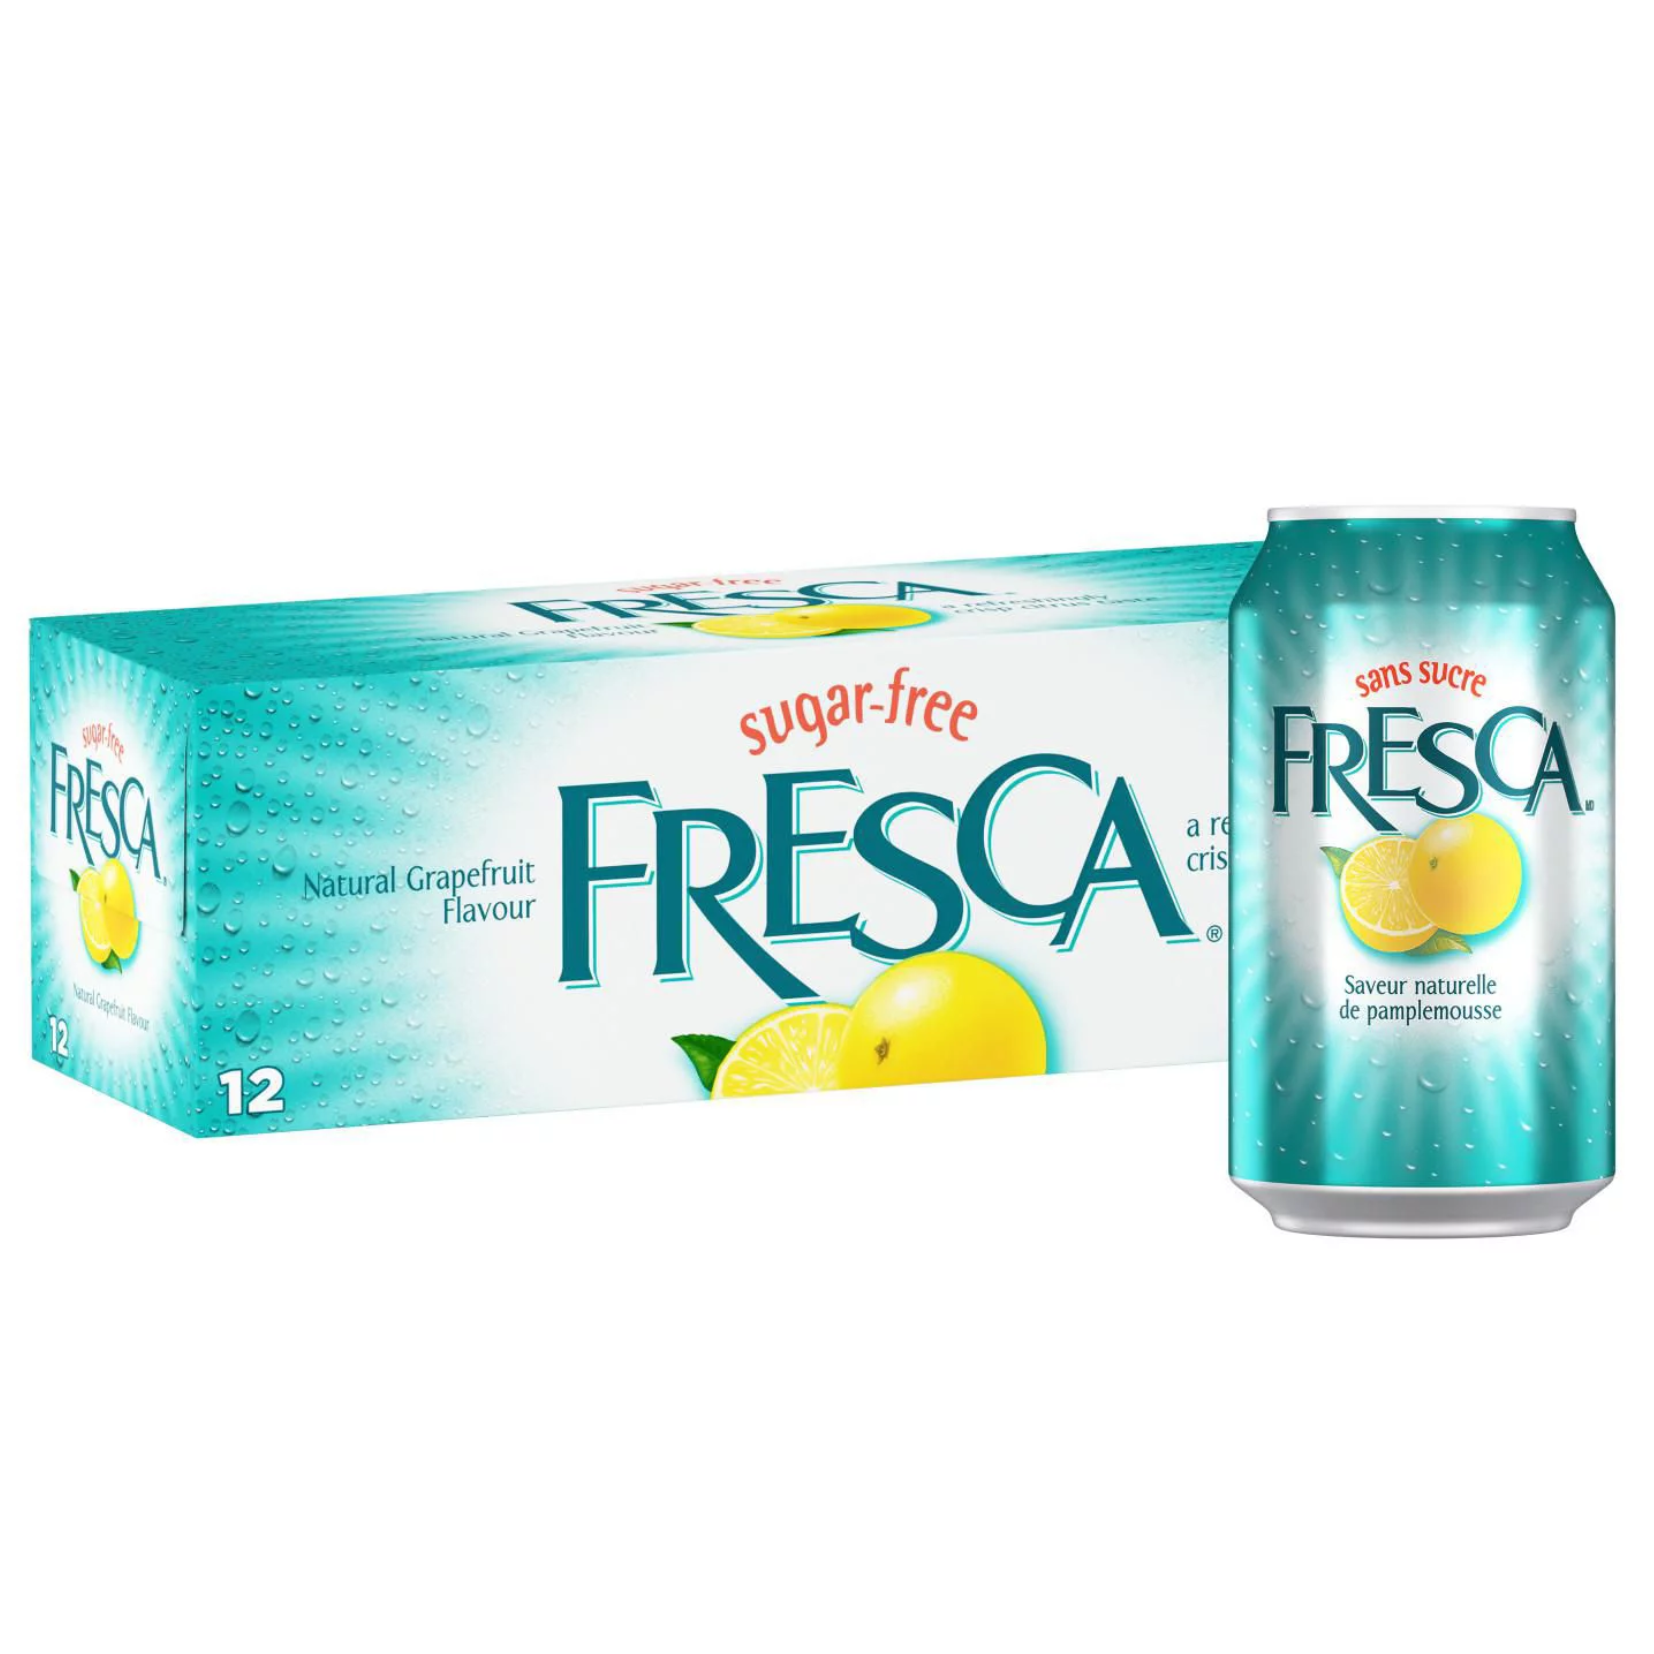 Fresca 355ml x 12